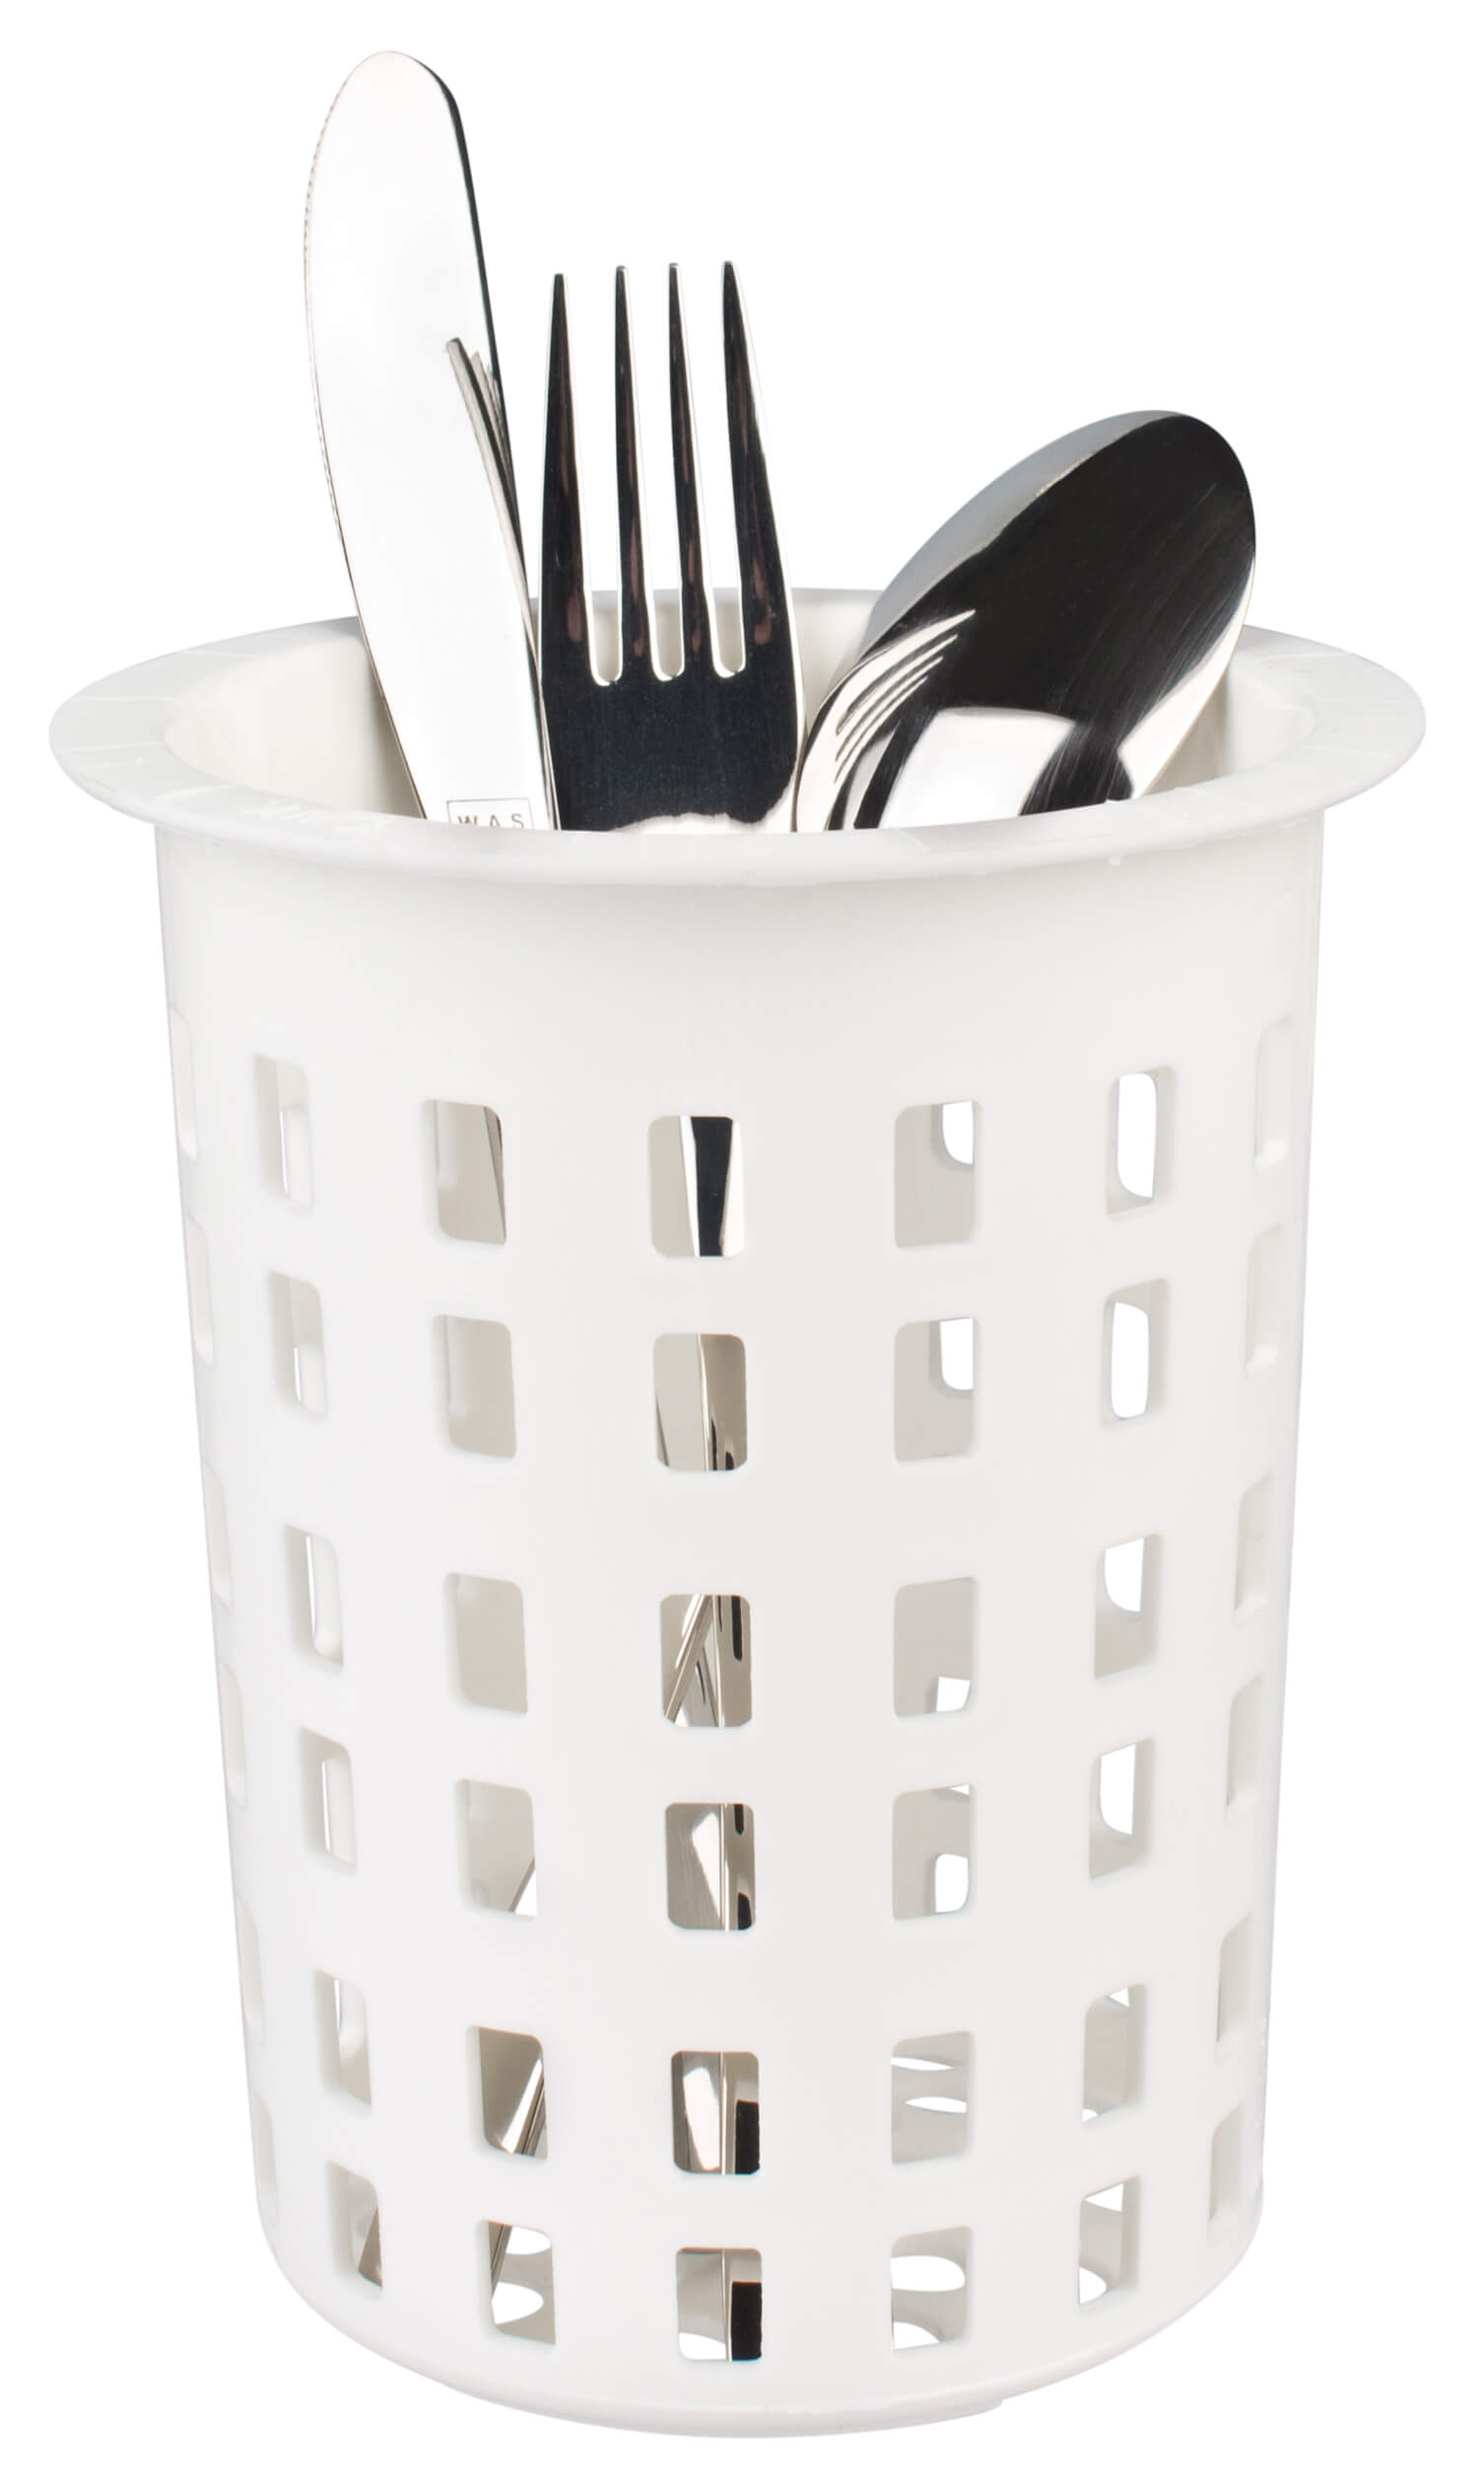 Cutlery basket, round, white plastic- 11x13,5cm